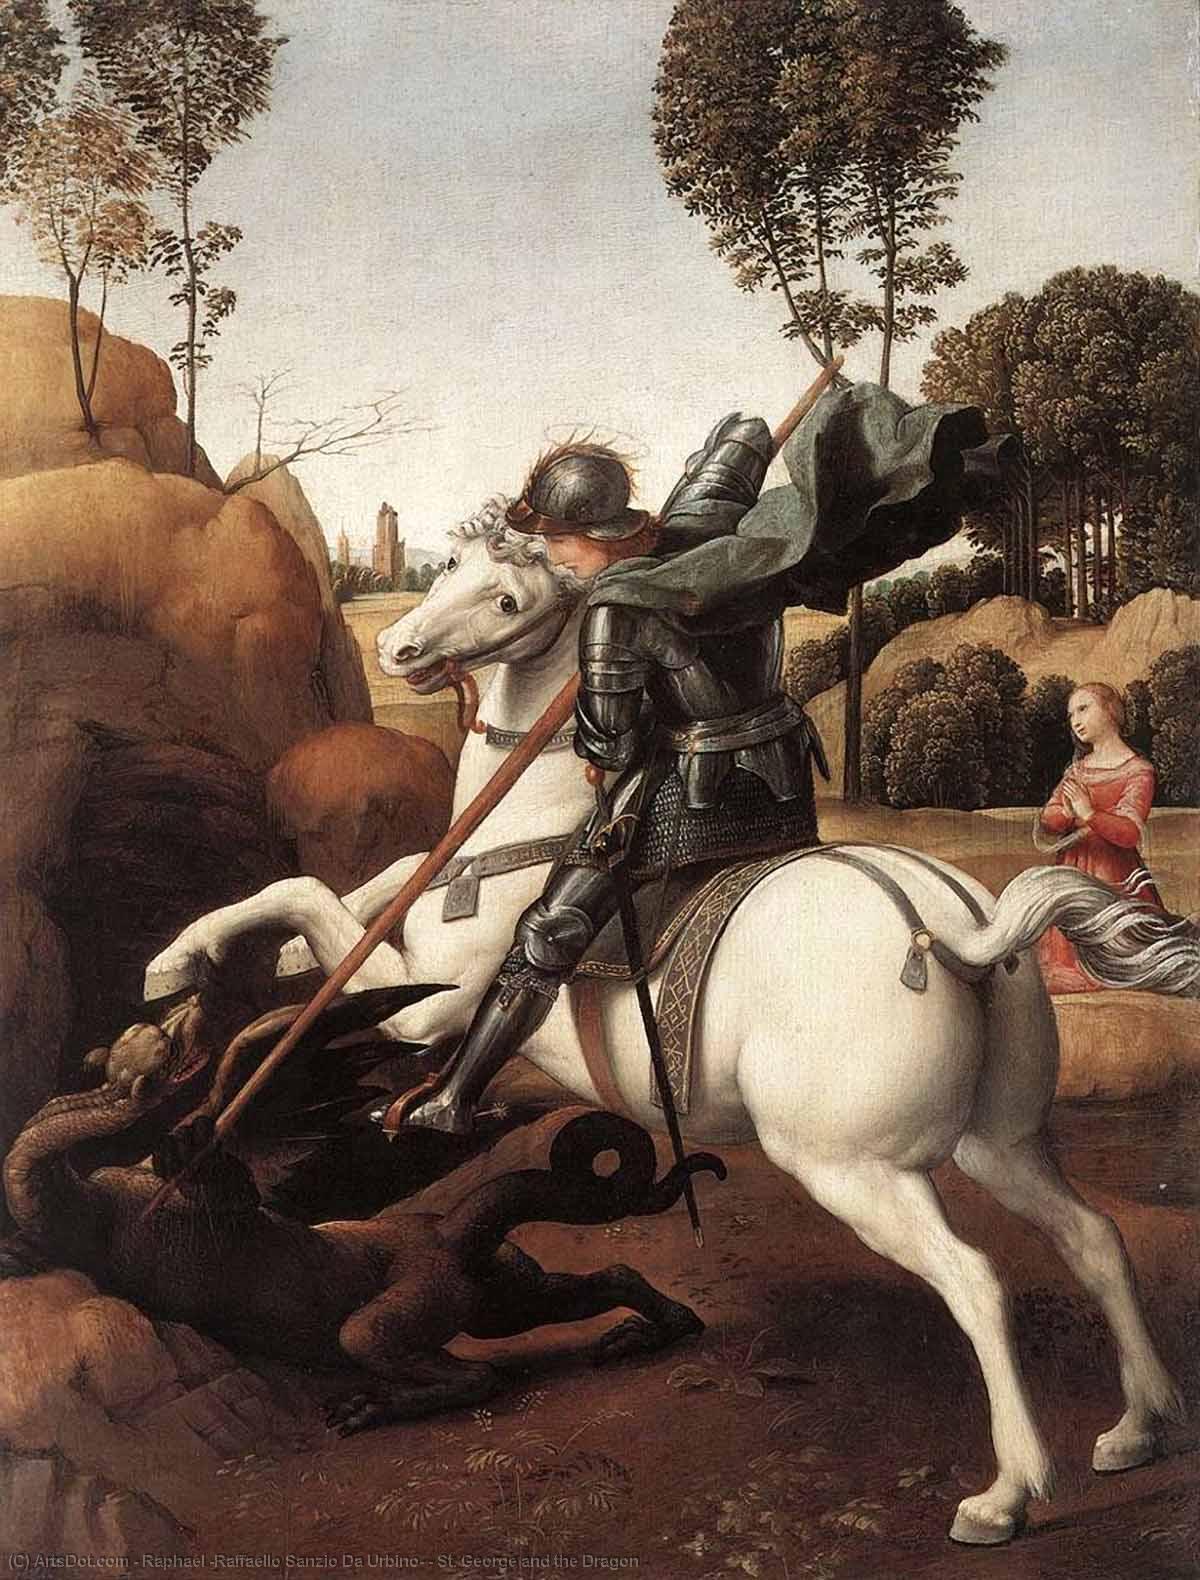 WikiOO.org - Encyclopedia of Fine Arts - Maleri, Artwork Raphael (Raffaello Sanzio Da Urbino) - St. George and the Dragon